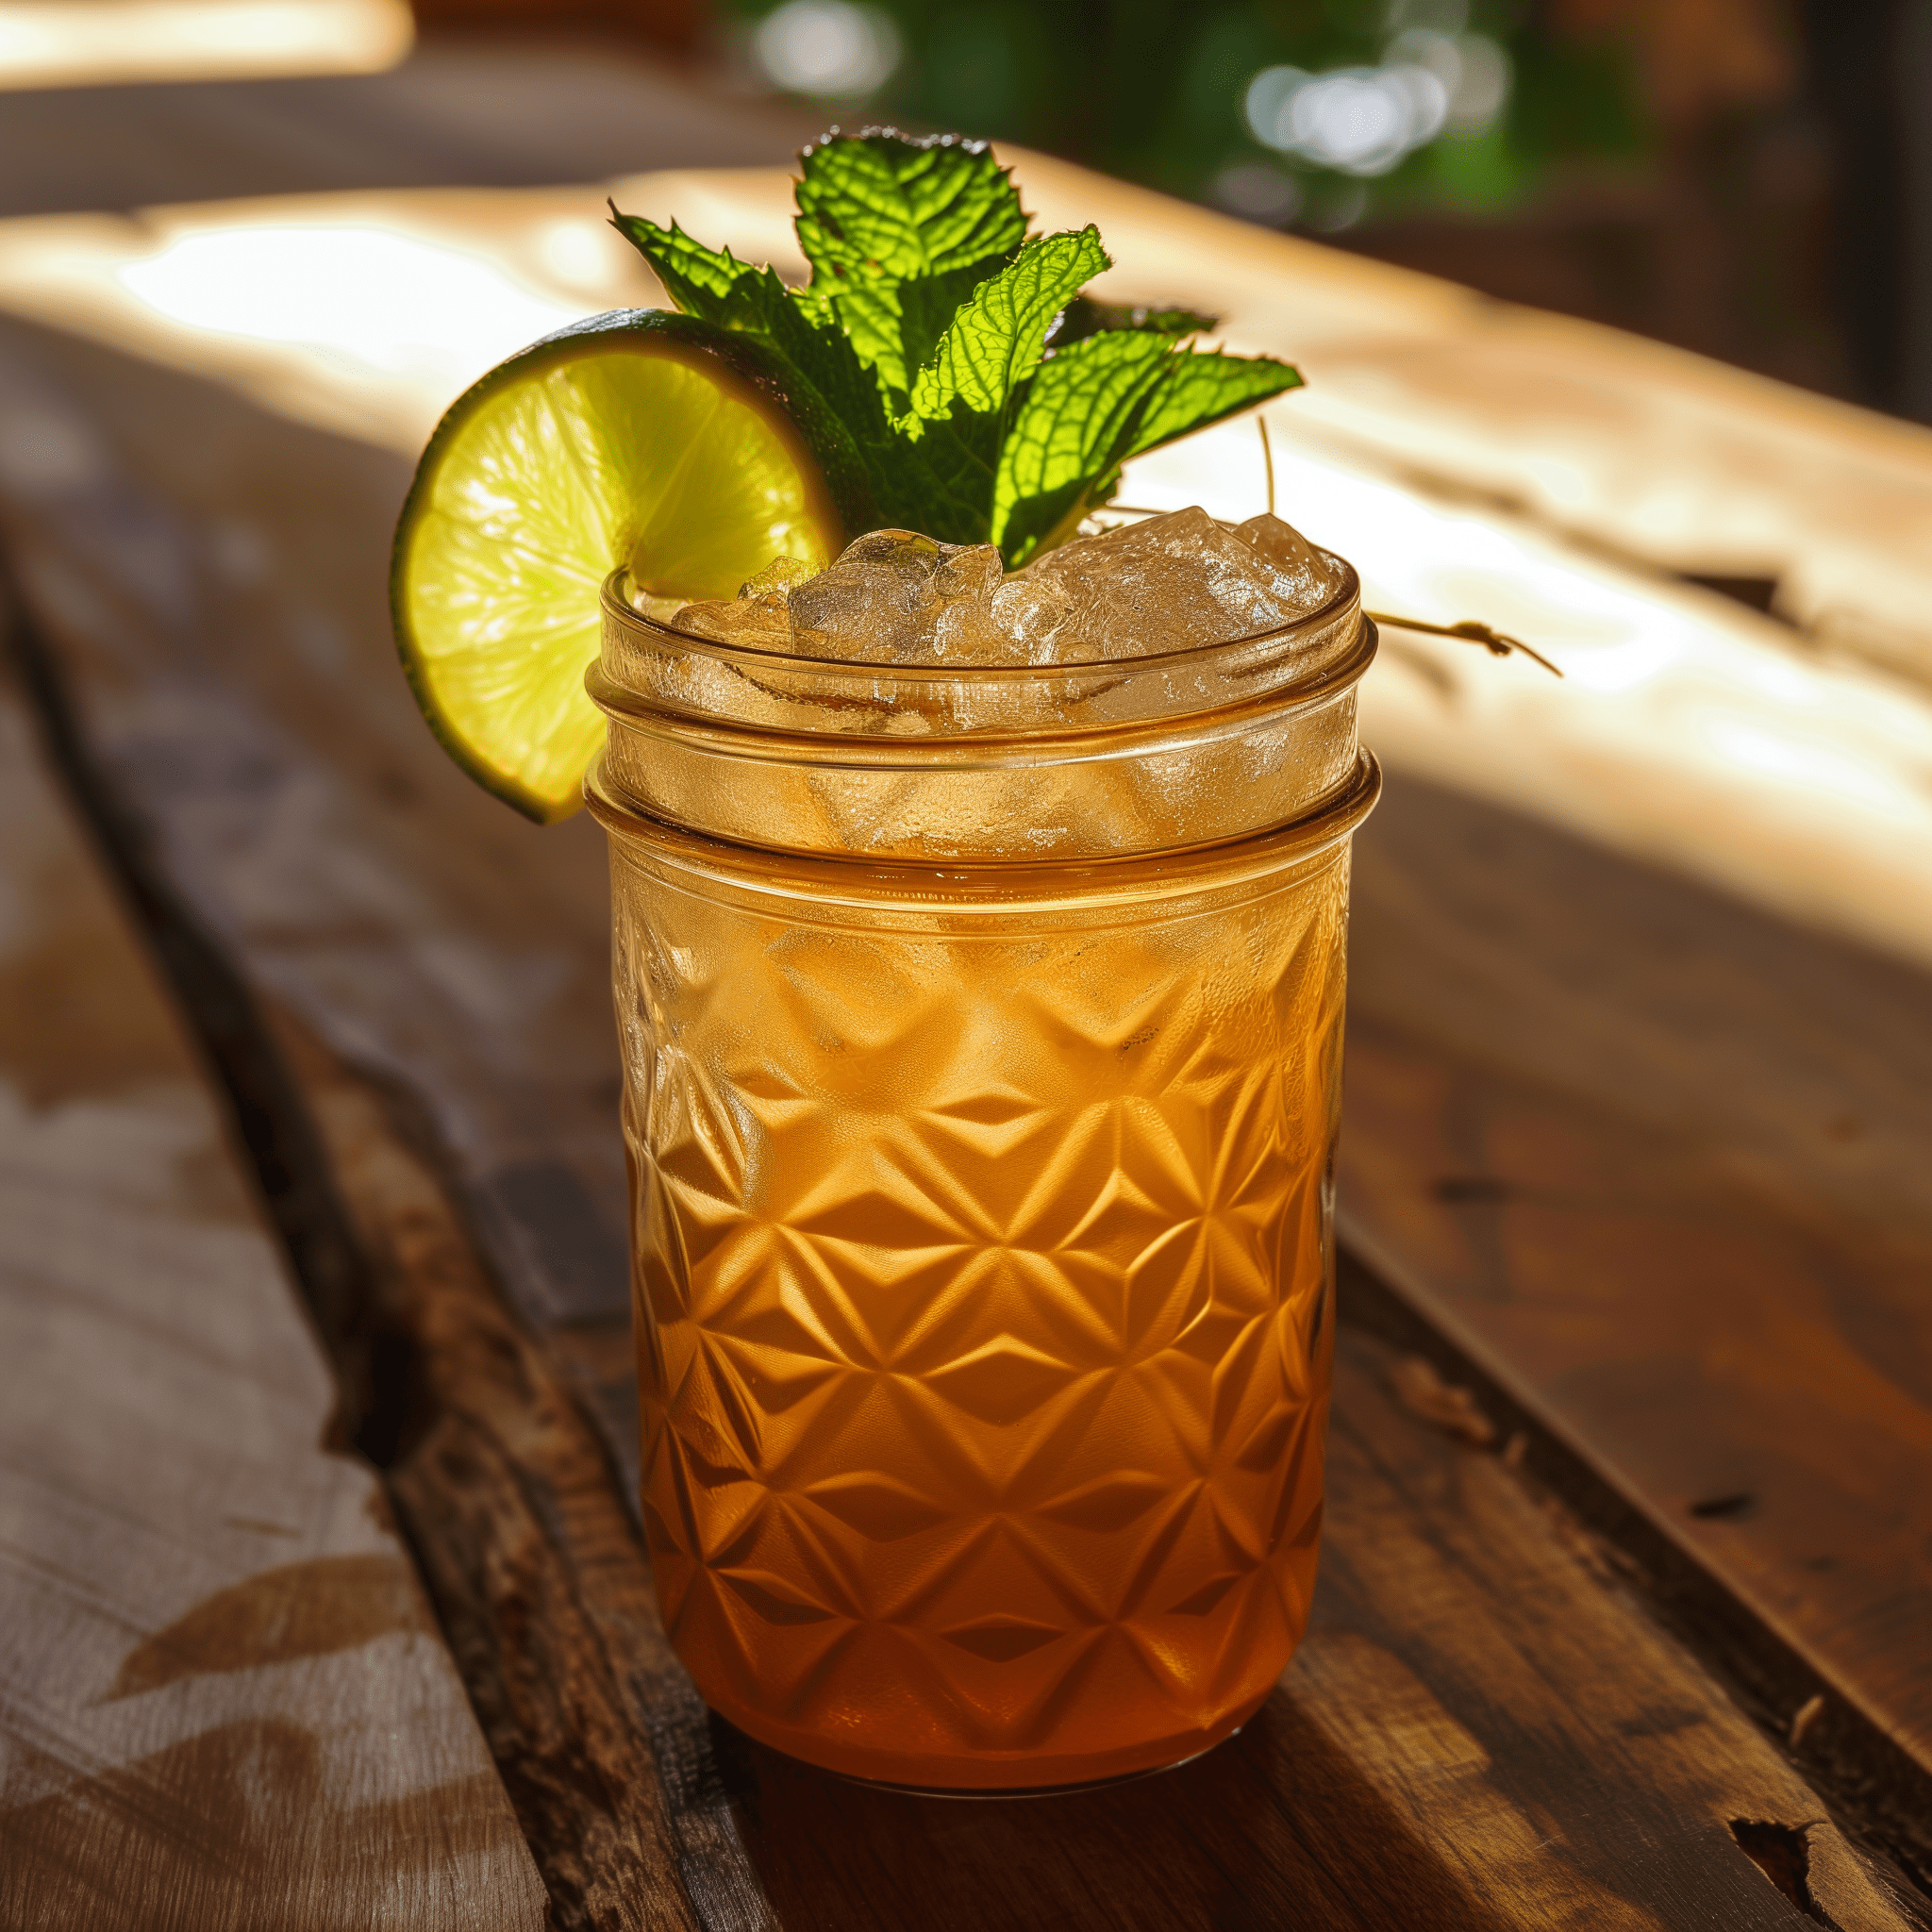 El Burro Cóctel Receta - El Burro es una sinfonía de sabores donde las notas terrosas del tequila se encuentran con los matices anisados del absenta, equilibrados por la acidez del limón y la dulzura de la piña. La cerveza de jengibre añade una efervescencia picante que hace que la bebida sea vigorizante y compleja.